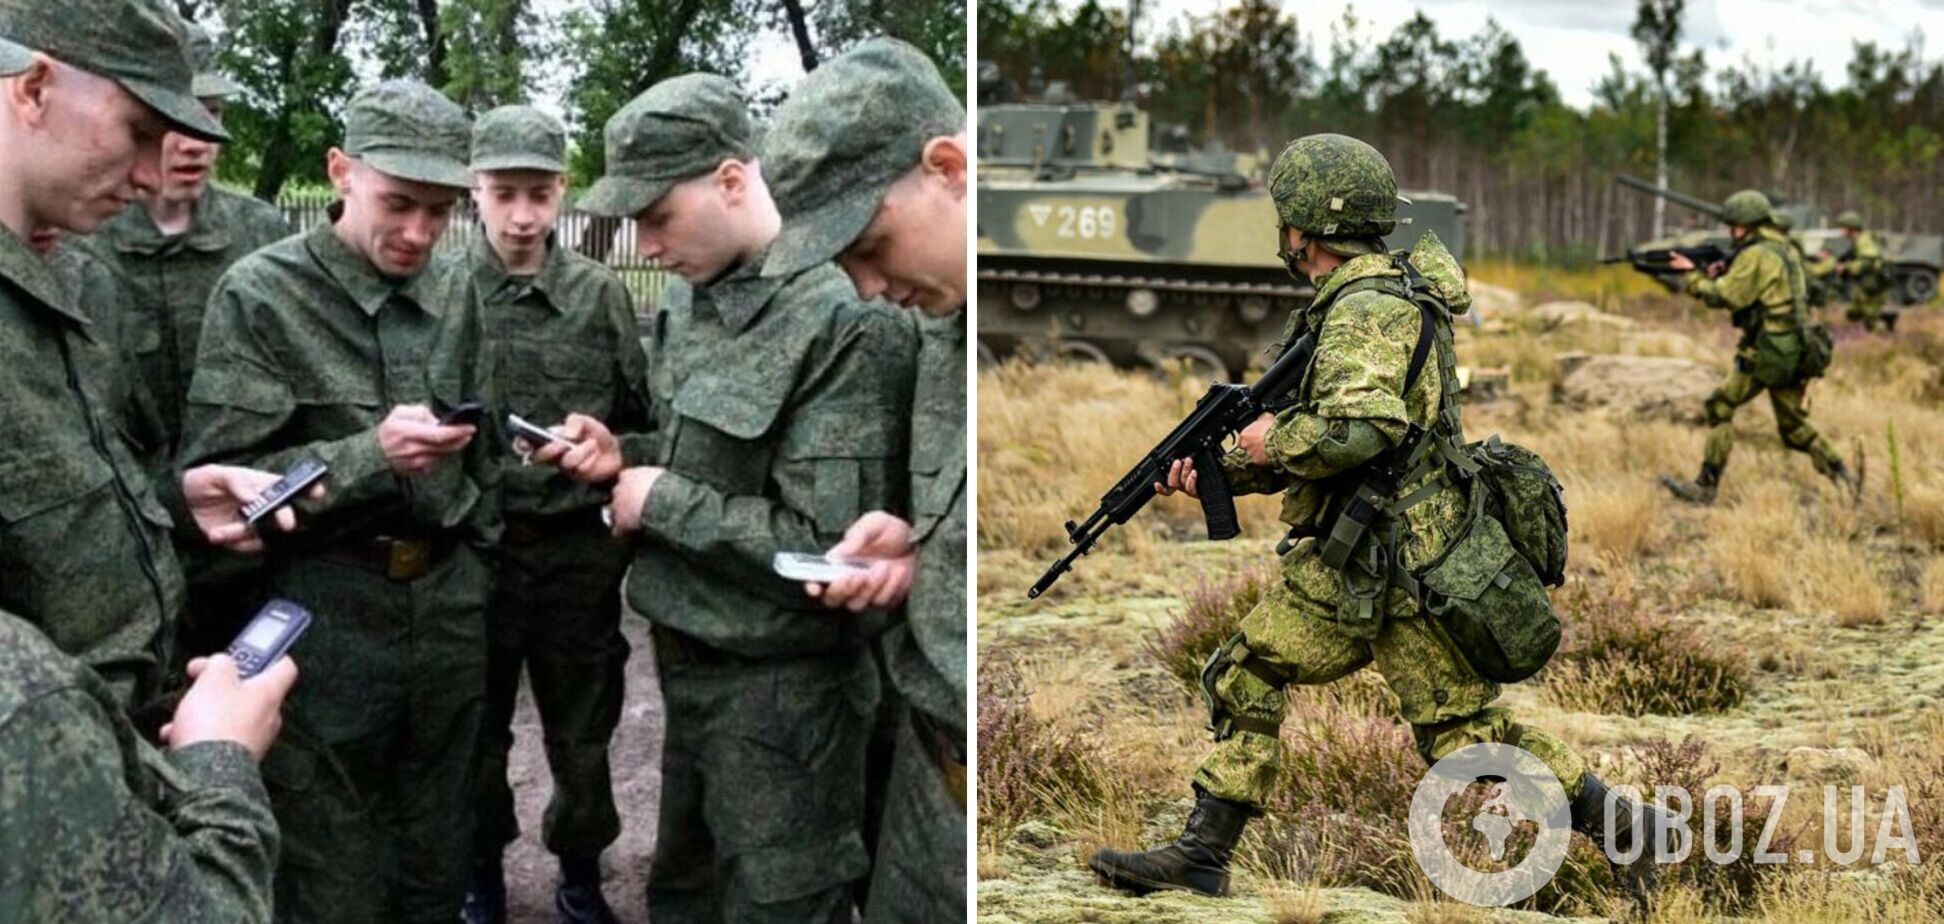 'Одна рота против полков НАТО': командование дало оккупантам в Украине 'спецзадачу' для усиления пропаганды – InformNapalm